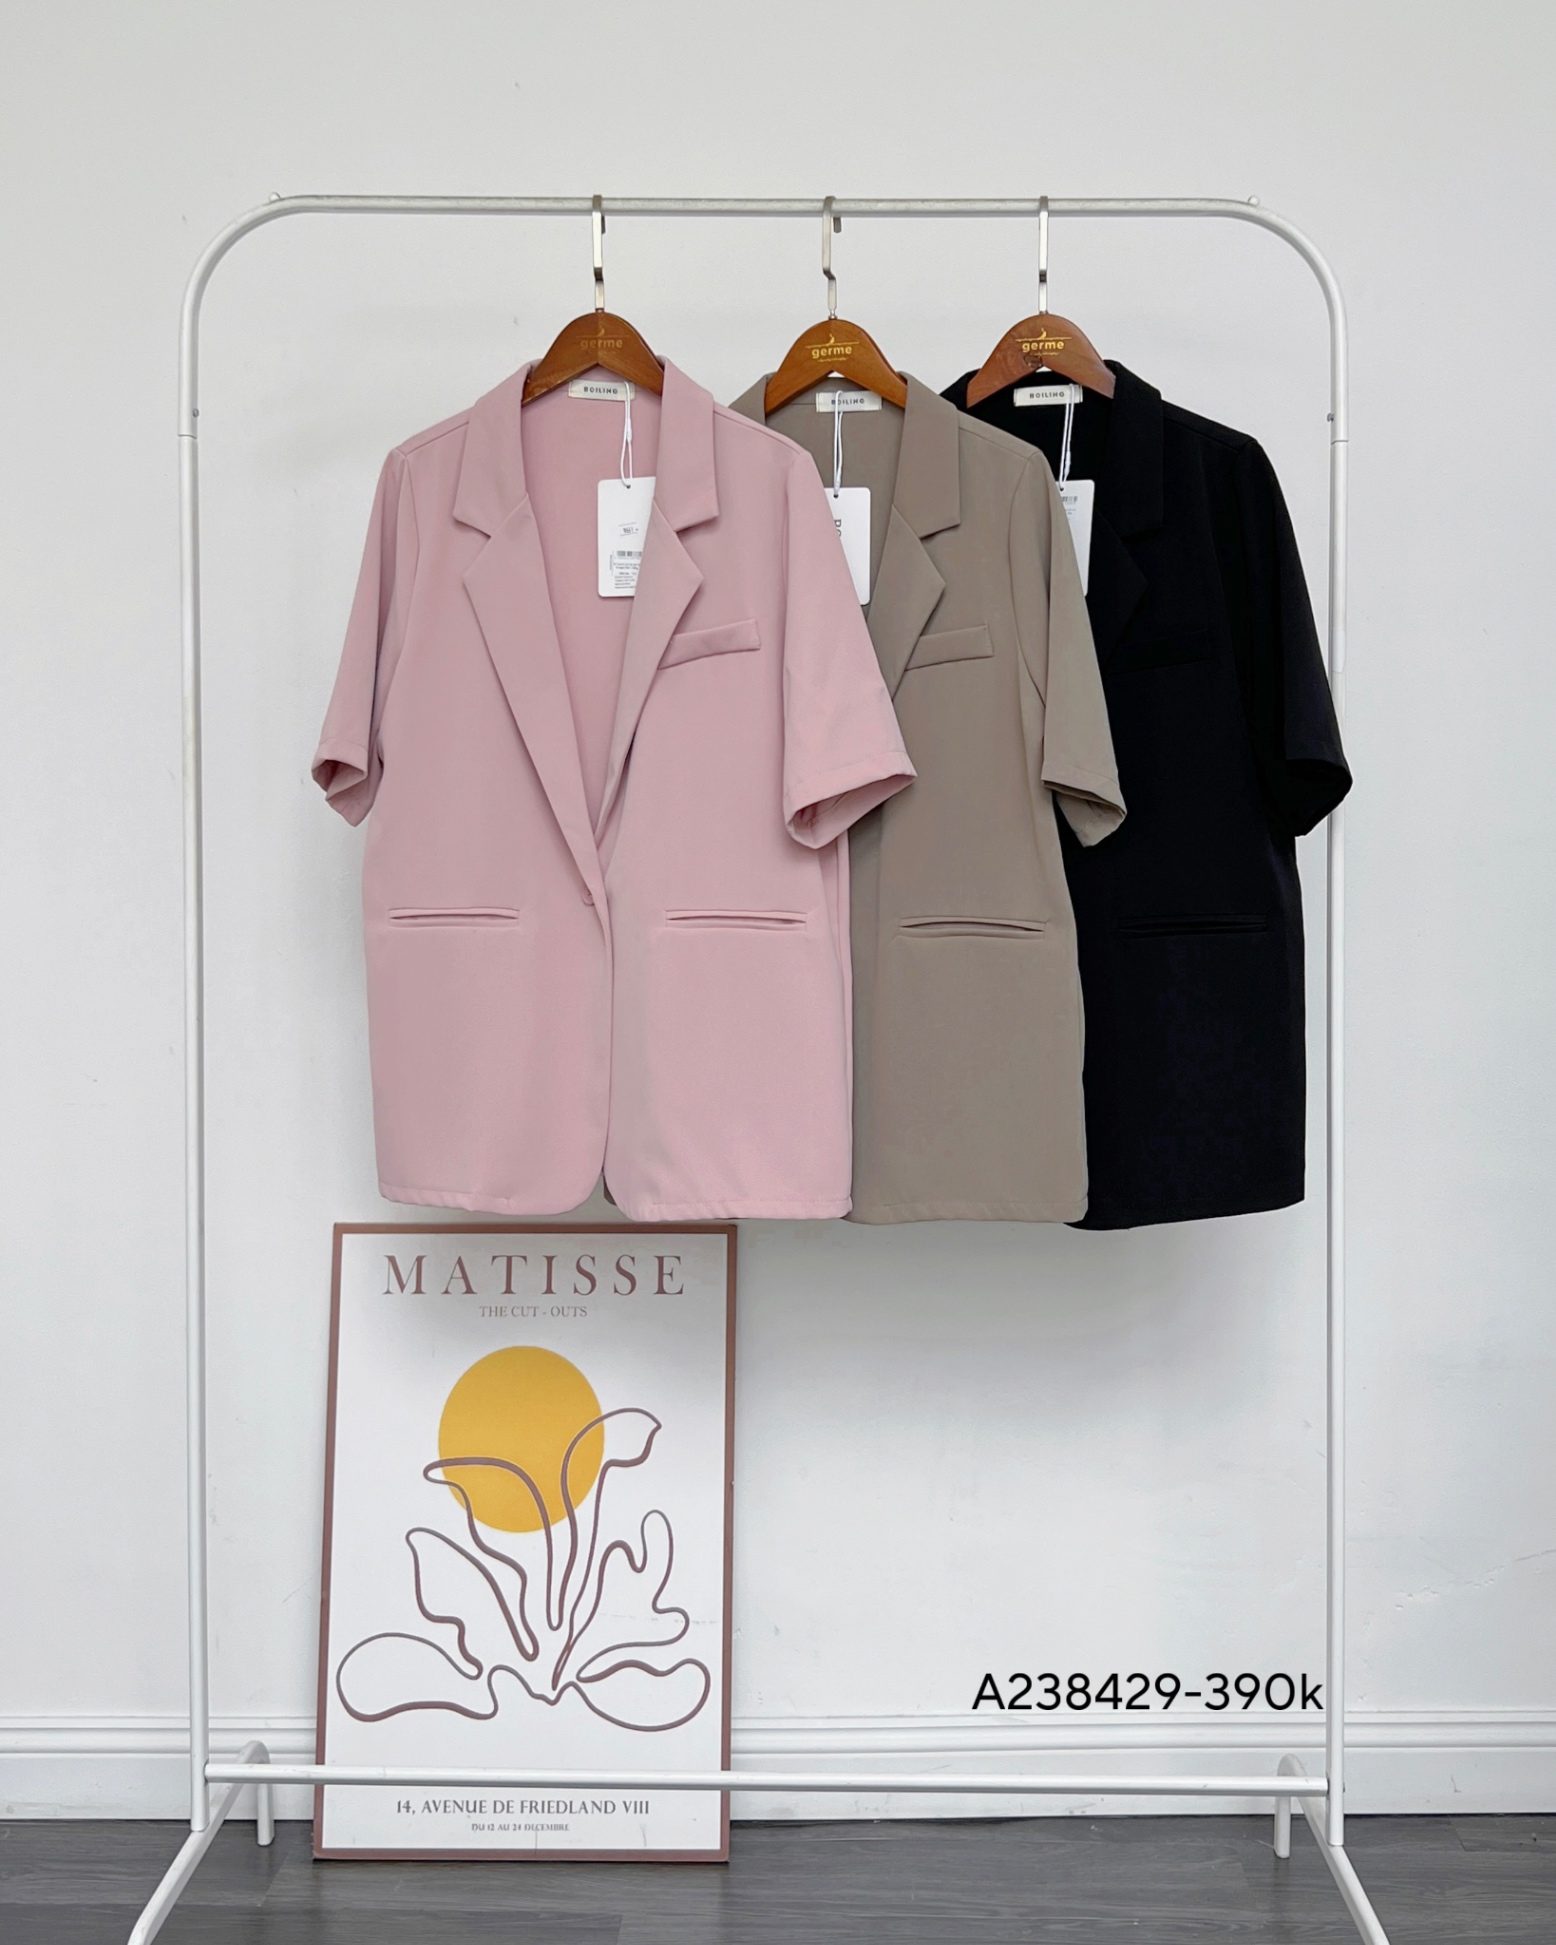 Đồng phục áo vest nữ công sở 12 - May đồng phục, xưởng may đồng phục giá rẻ  uy tín tại hà nội